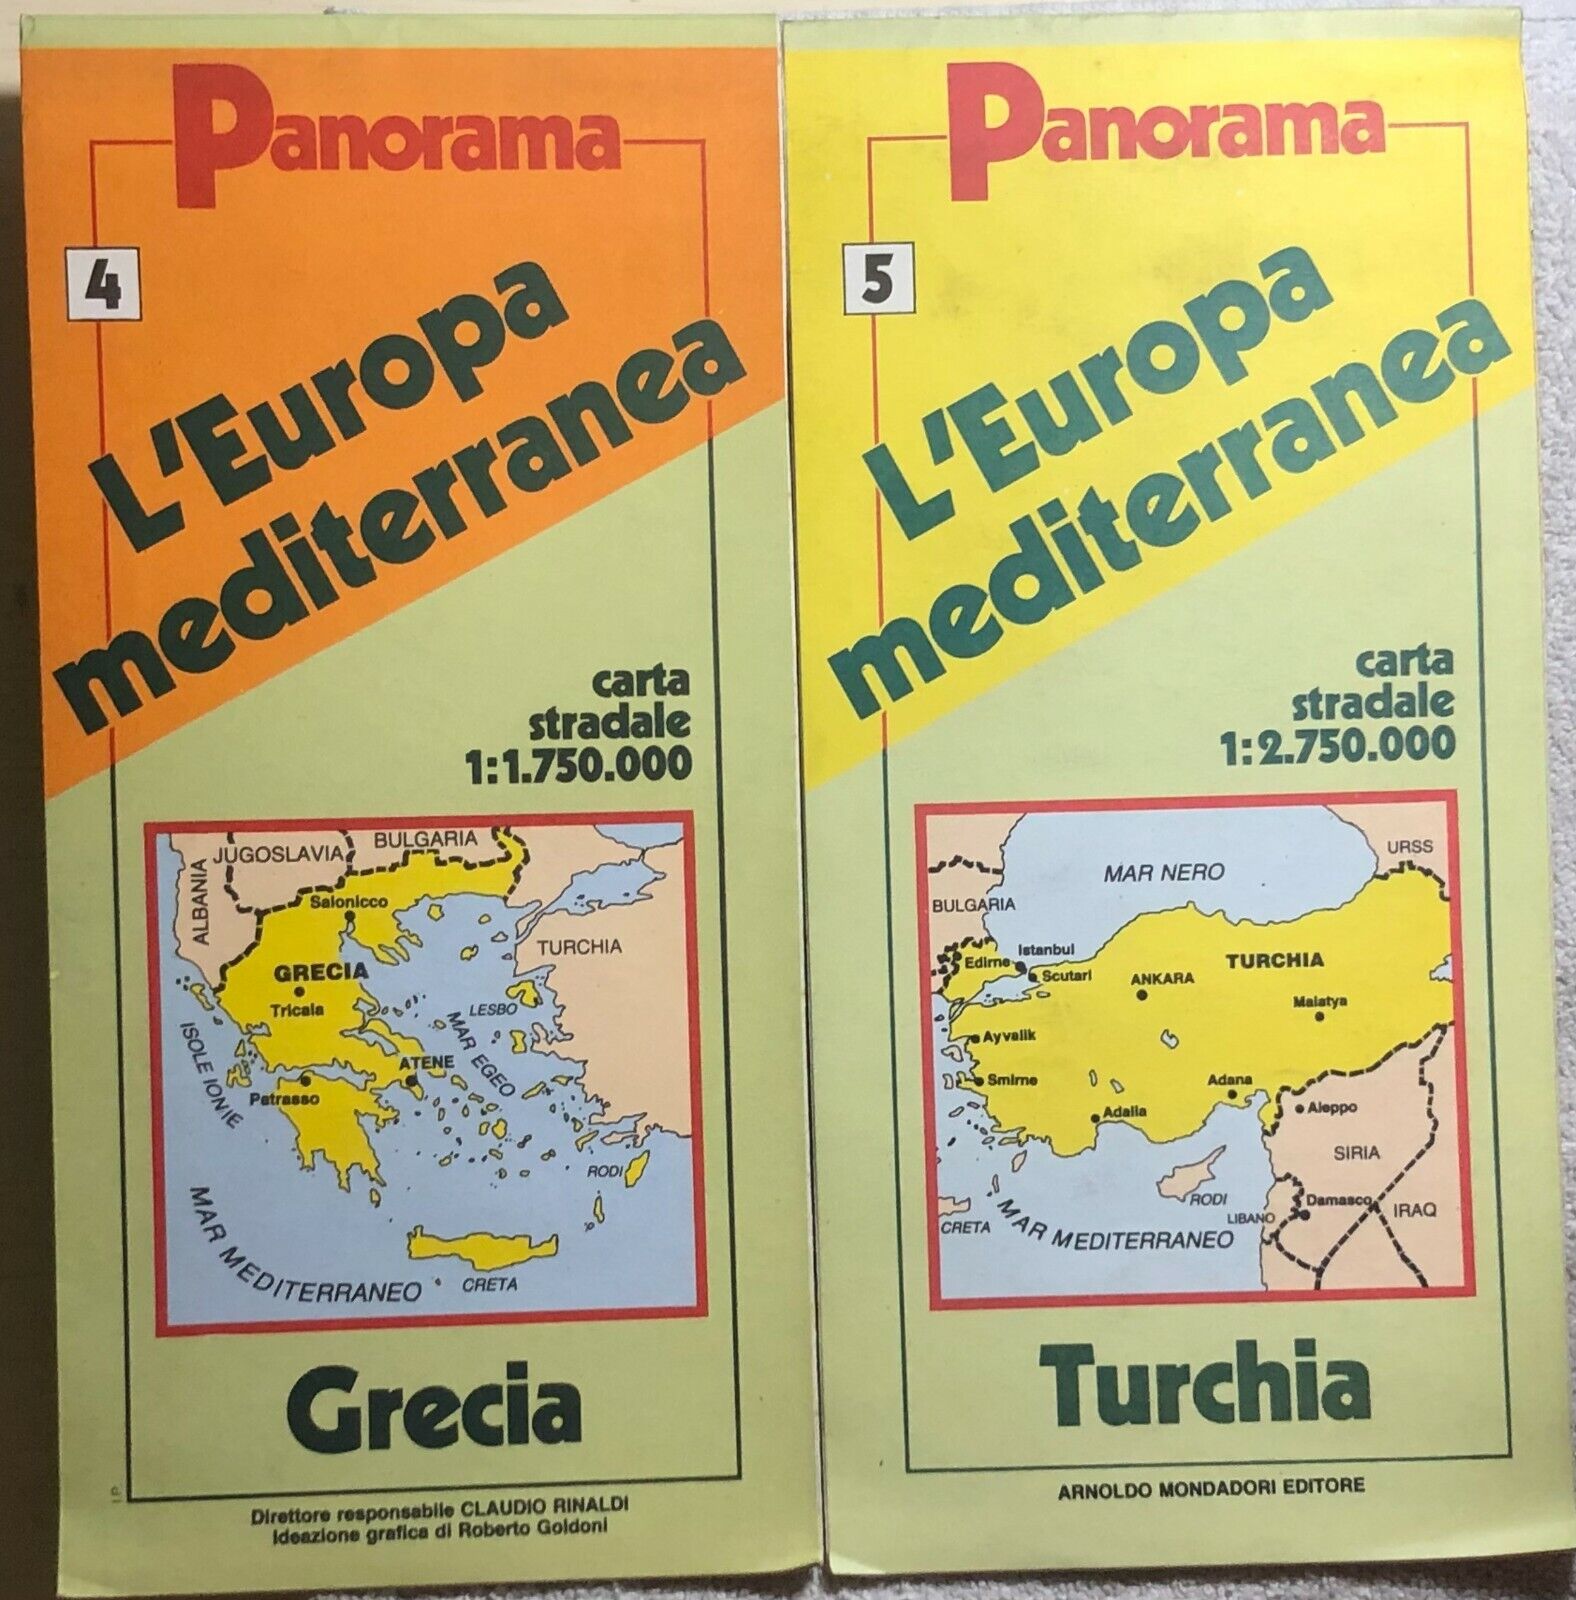 L'Europa mediterranea Panorama 4-5 Grecia Turchia di Aa.vv.,  1989,  Panorama